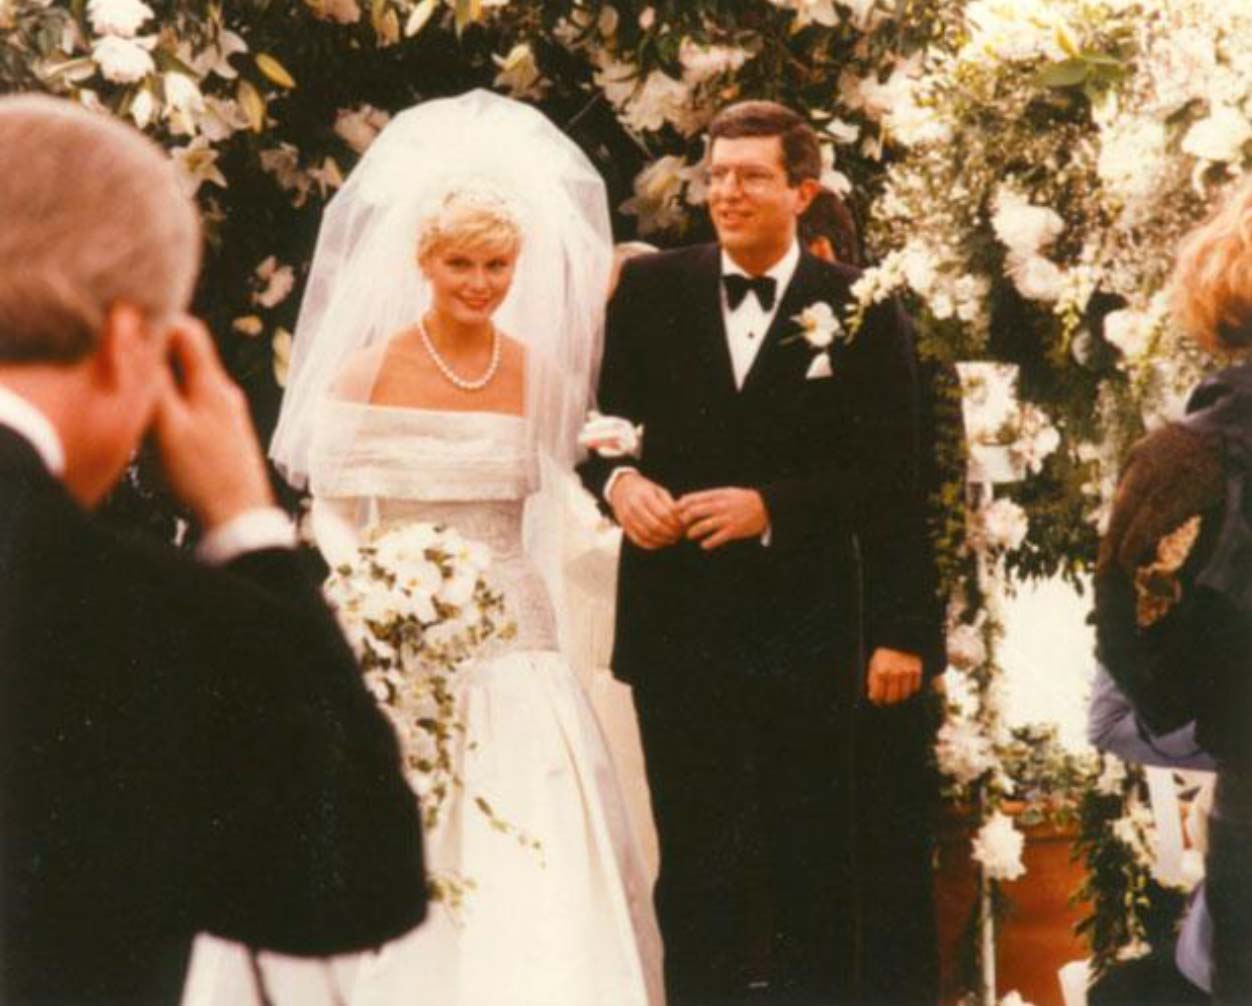 On May 29, Hamlisch marries Terre Blair in New York. - Marvin Hamlisch ...